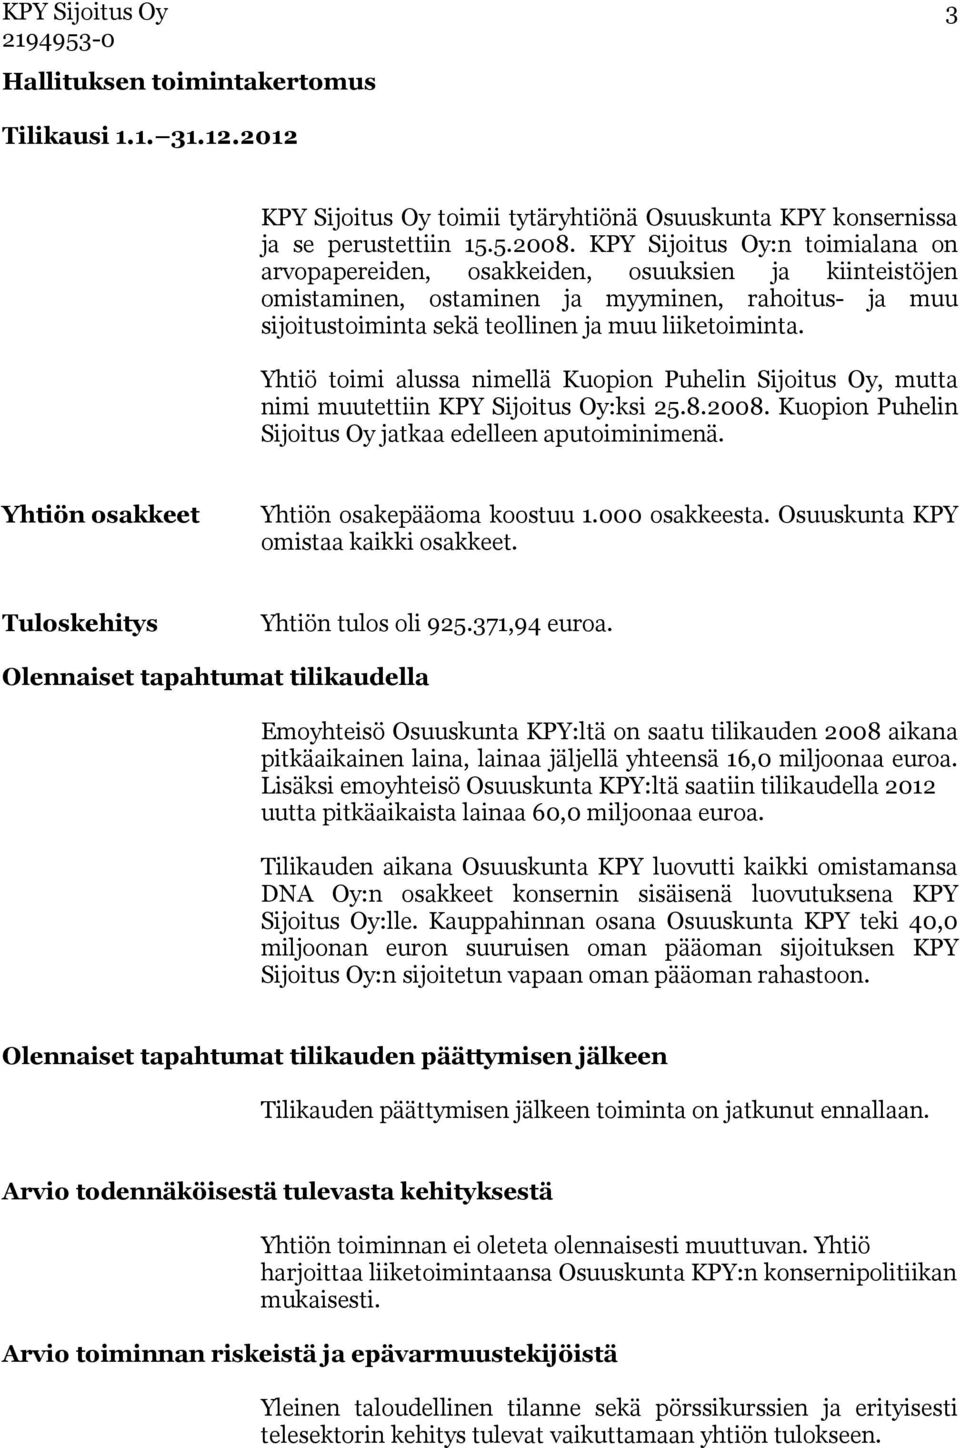 Yhtiö toimi alussa nimellä Kuopion Puhelin Sijoitus Oy, mutta nimi muutettiin KPY Sijoitus Oy:ksi 25.8.2008. Kuopion Puhelin Sijoitus Oy jatkaa edelleen aputoiminimenä.